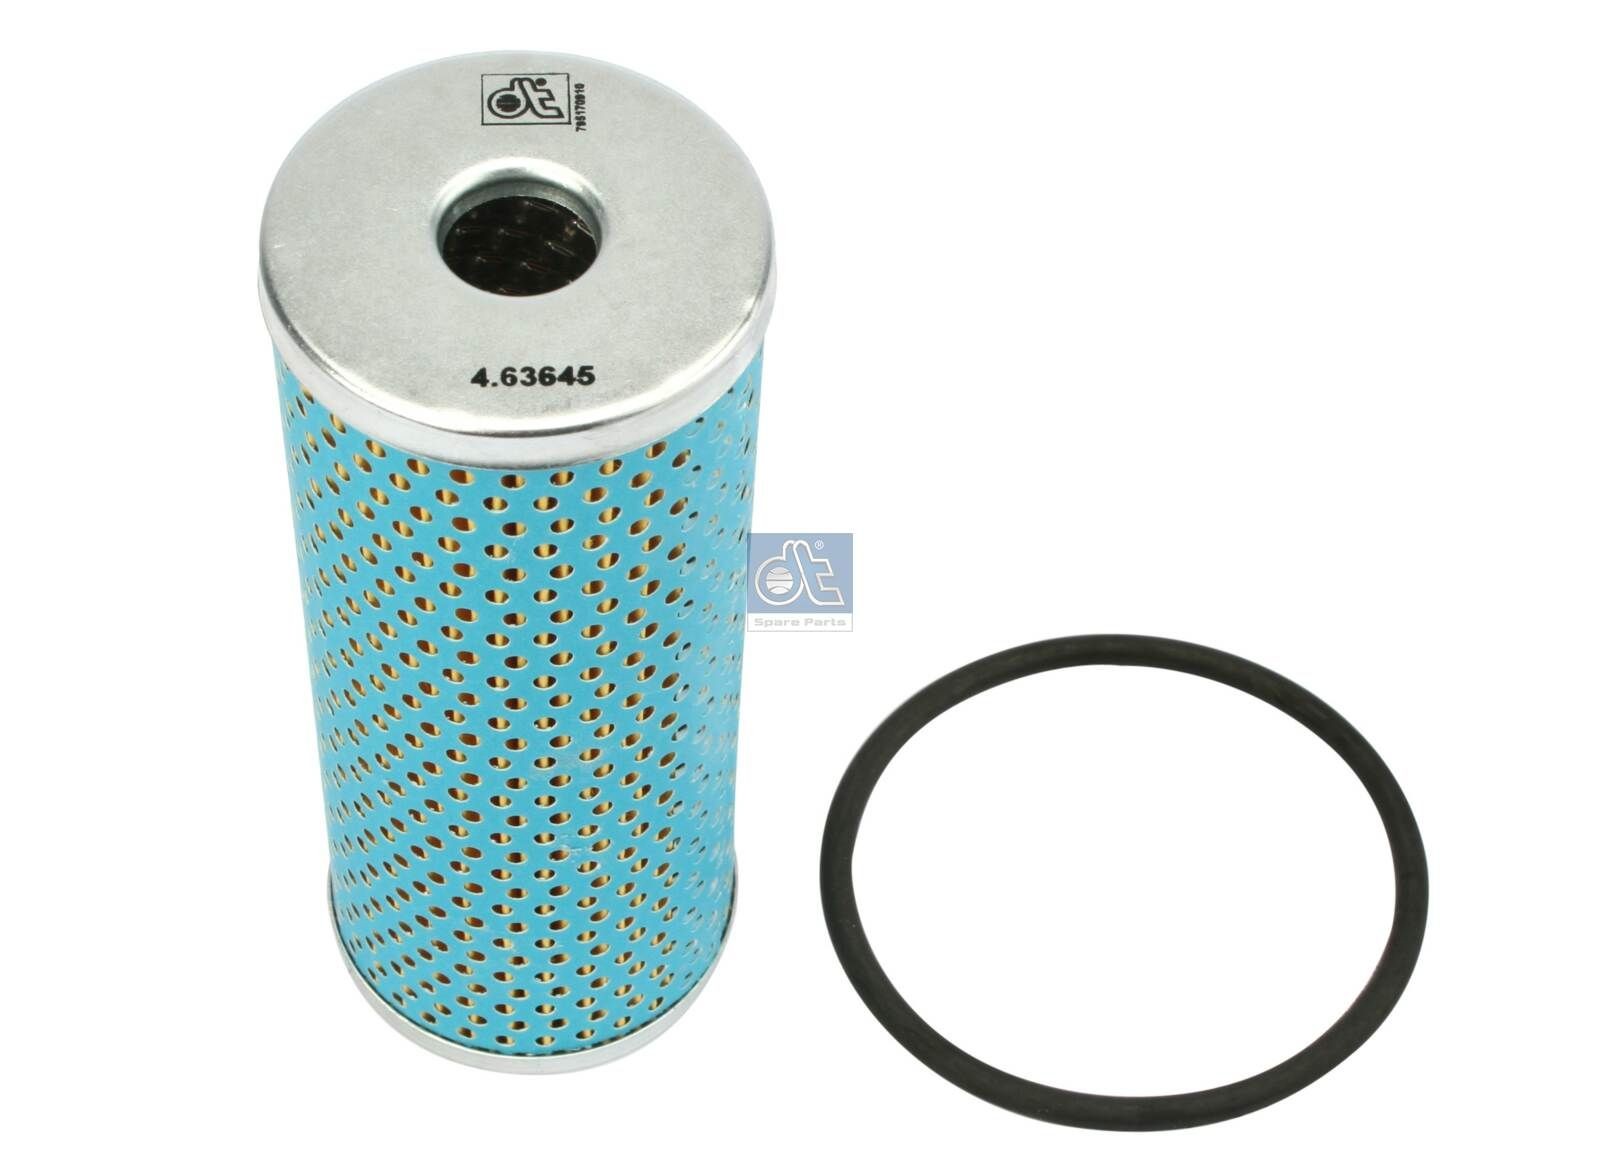 Achat de H 623 DT Spare Parts Cartouche filtrante Diamètre intérieur: 18mm, Ø: 60mm, Hauteur: 149mm Filtre à huile 4.63645 bon marché